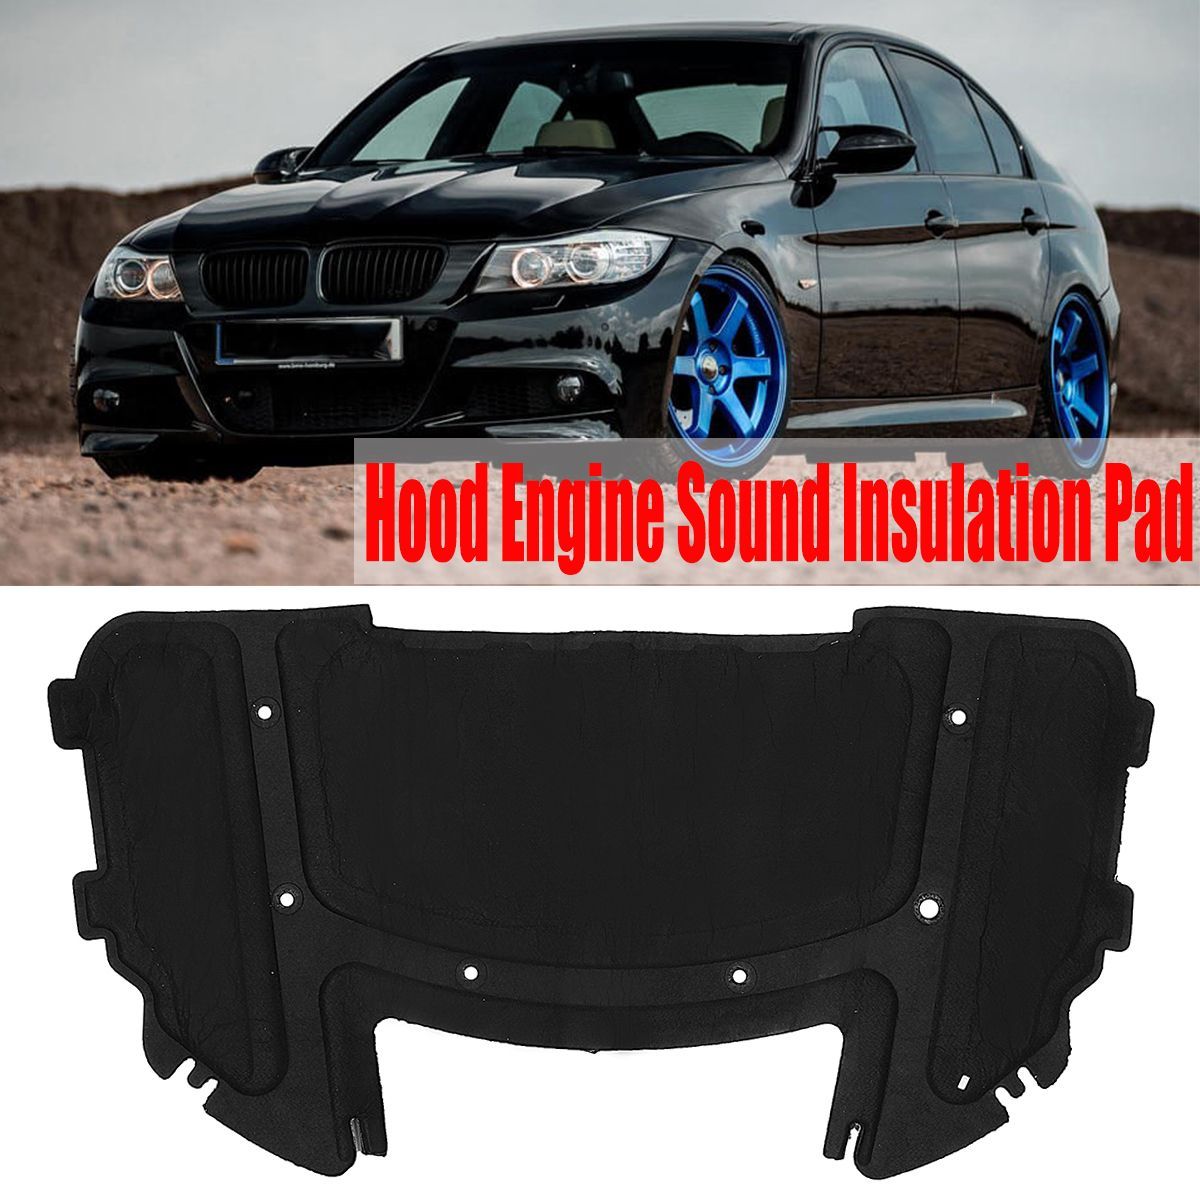 Front-Hood-Engine-Sound-Heat-Insulation-Pad-For-BMW-E90-E91-E92-E93-323i-325i-51487059260-1677154